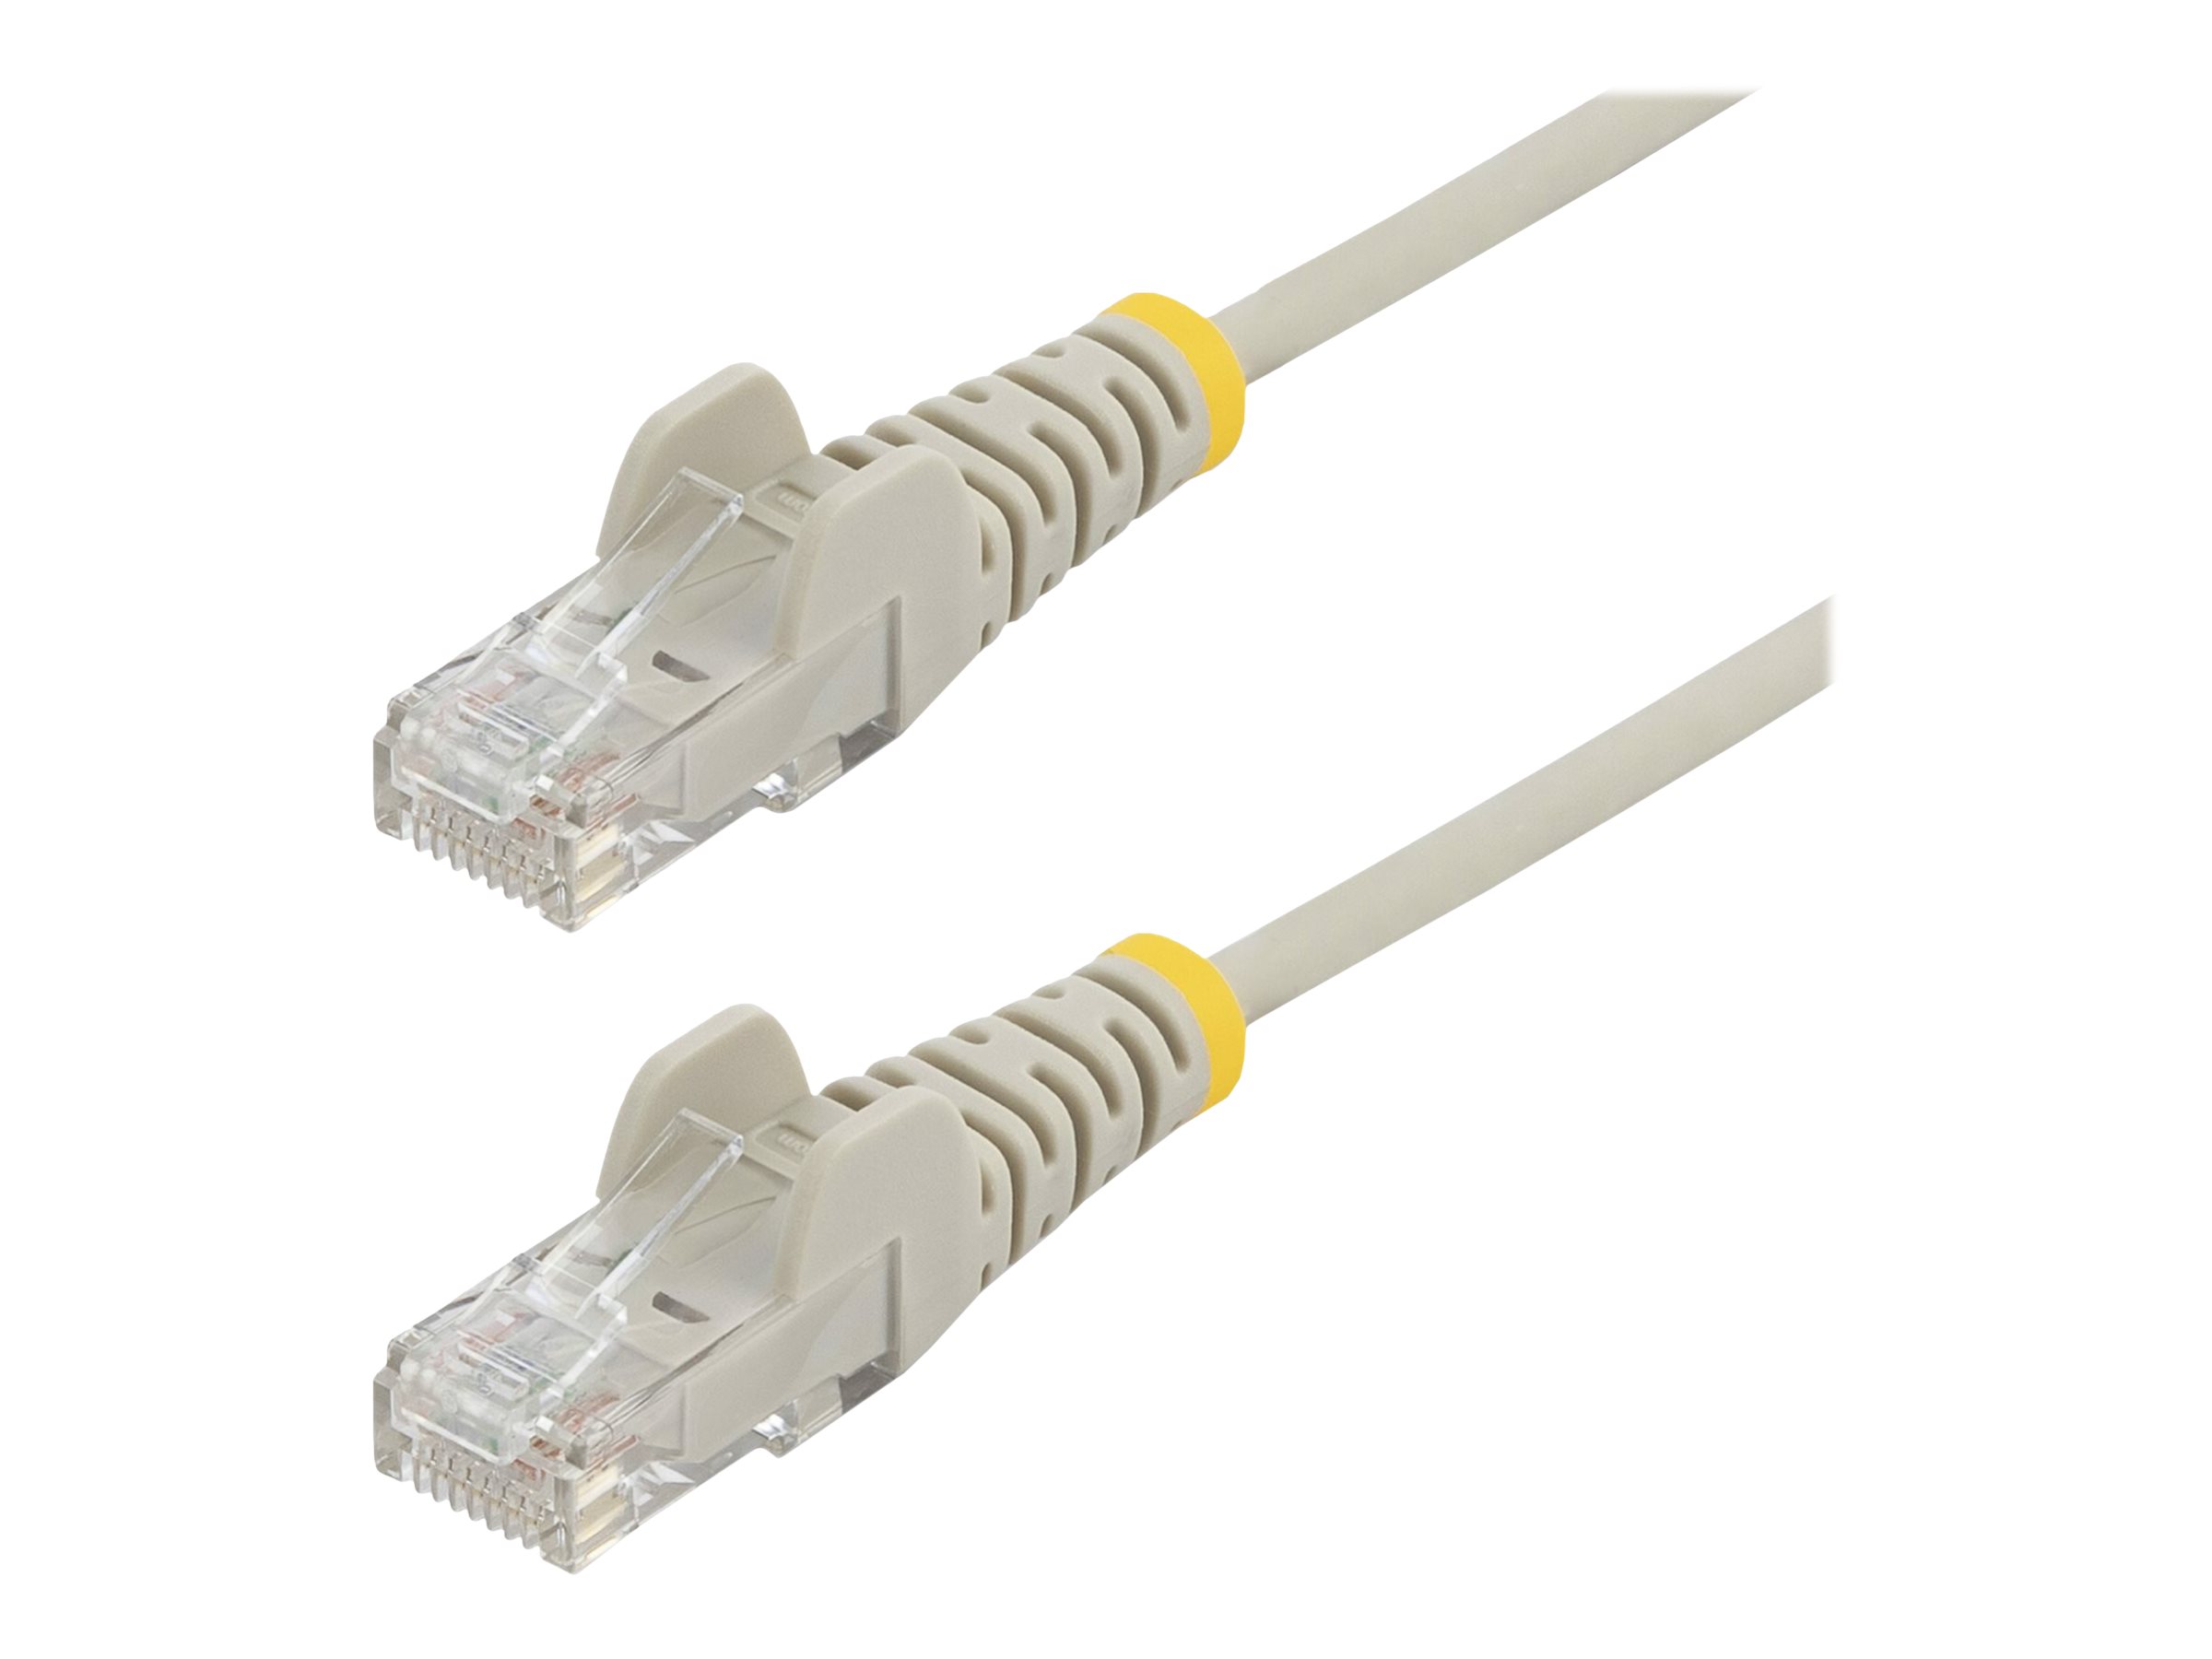 StarTech.com Cable reseau Ethernet RJ45 Cat6 de 2,5 m - Cordon de brassage mince Cat 6 UTP sans crochet - Fil Gigabit gris (N6PAT250CMGRS) - Cordon de raccordement - RJ-45 (M) pour RJ-45 (M) - 2.5 m - CAT 6 - sans crochet - gris - N6PAT250CMGRS - Câbles à paire torsadée